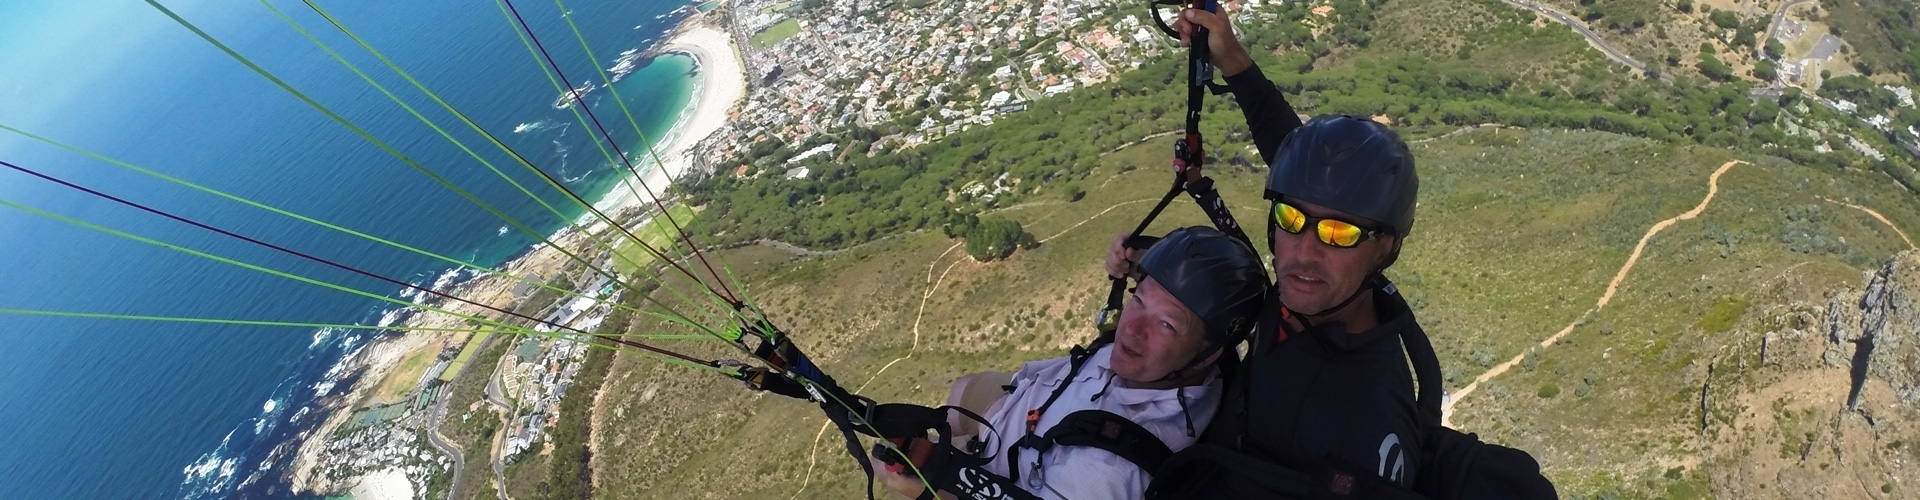 header-paragliding-in-zuid-afrika-1920x500-1